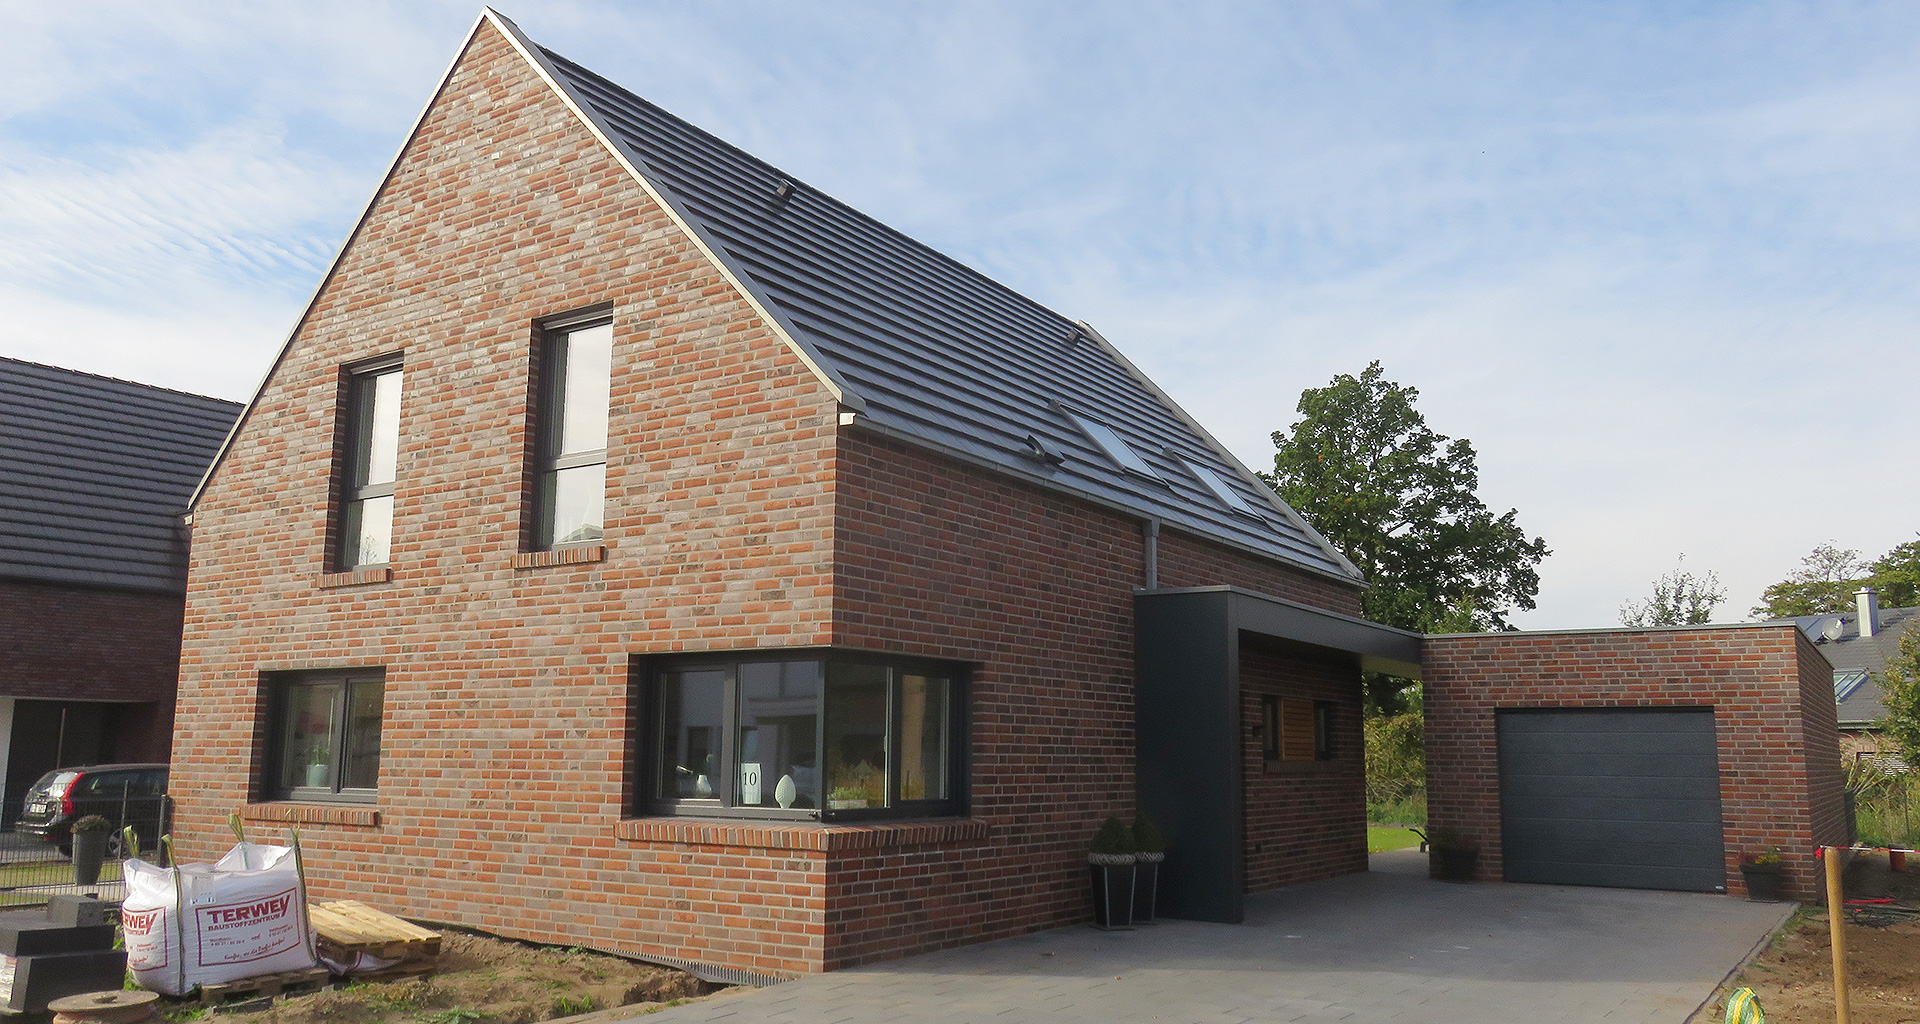 Einfamilienhaus von vorn seitlich mit Garage in Grafschaft Bentheim Nordhorn 2017